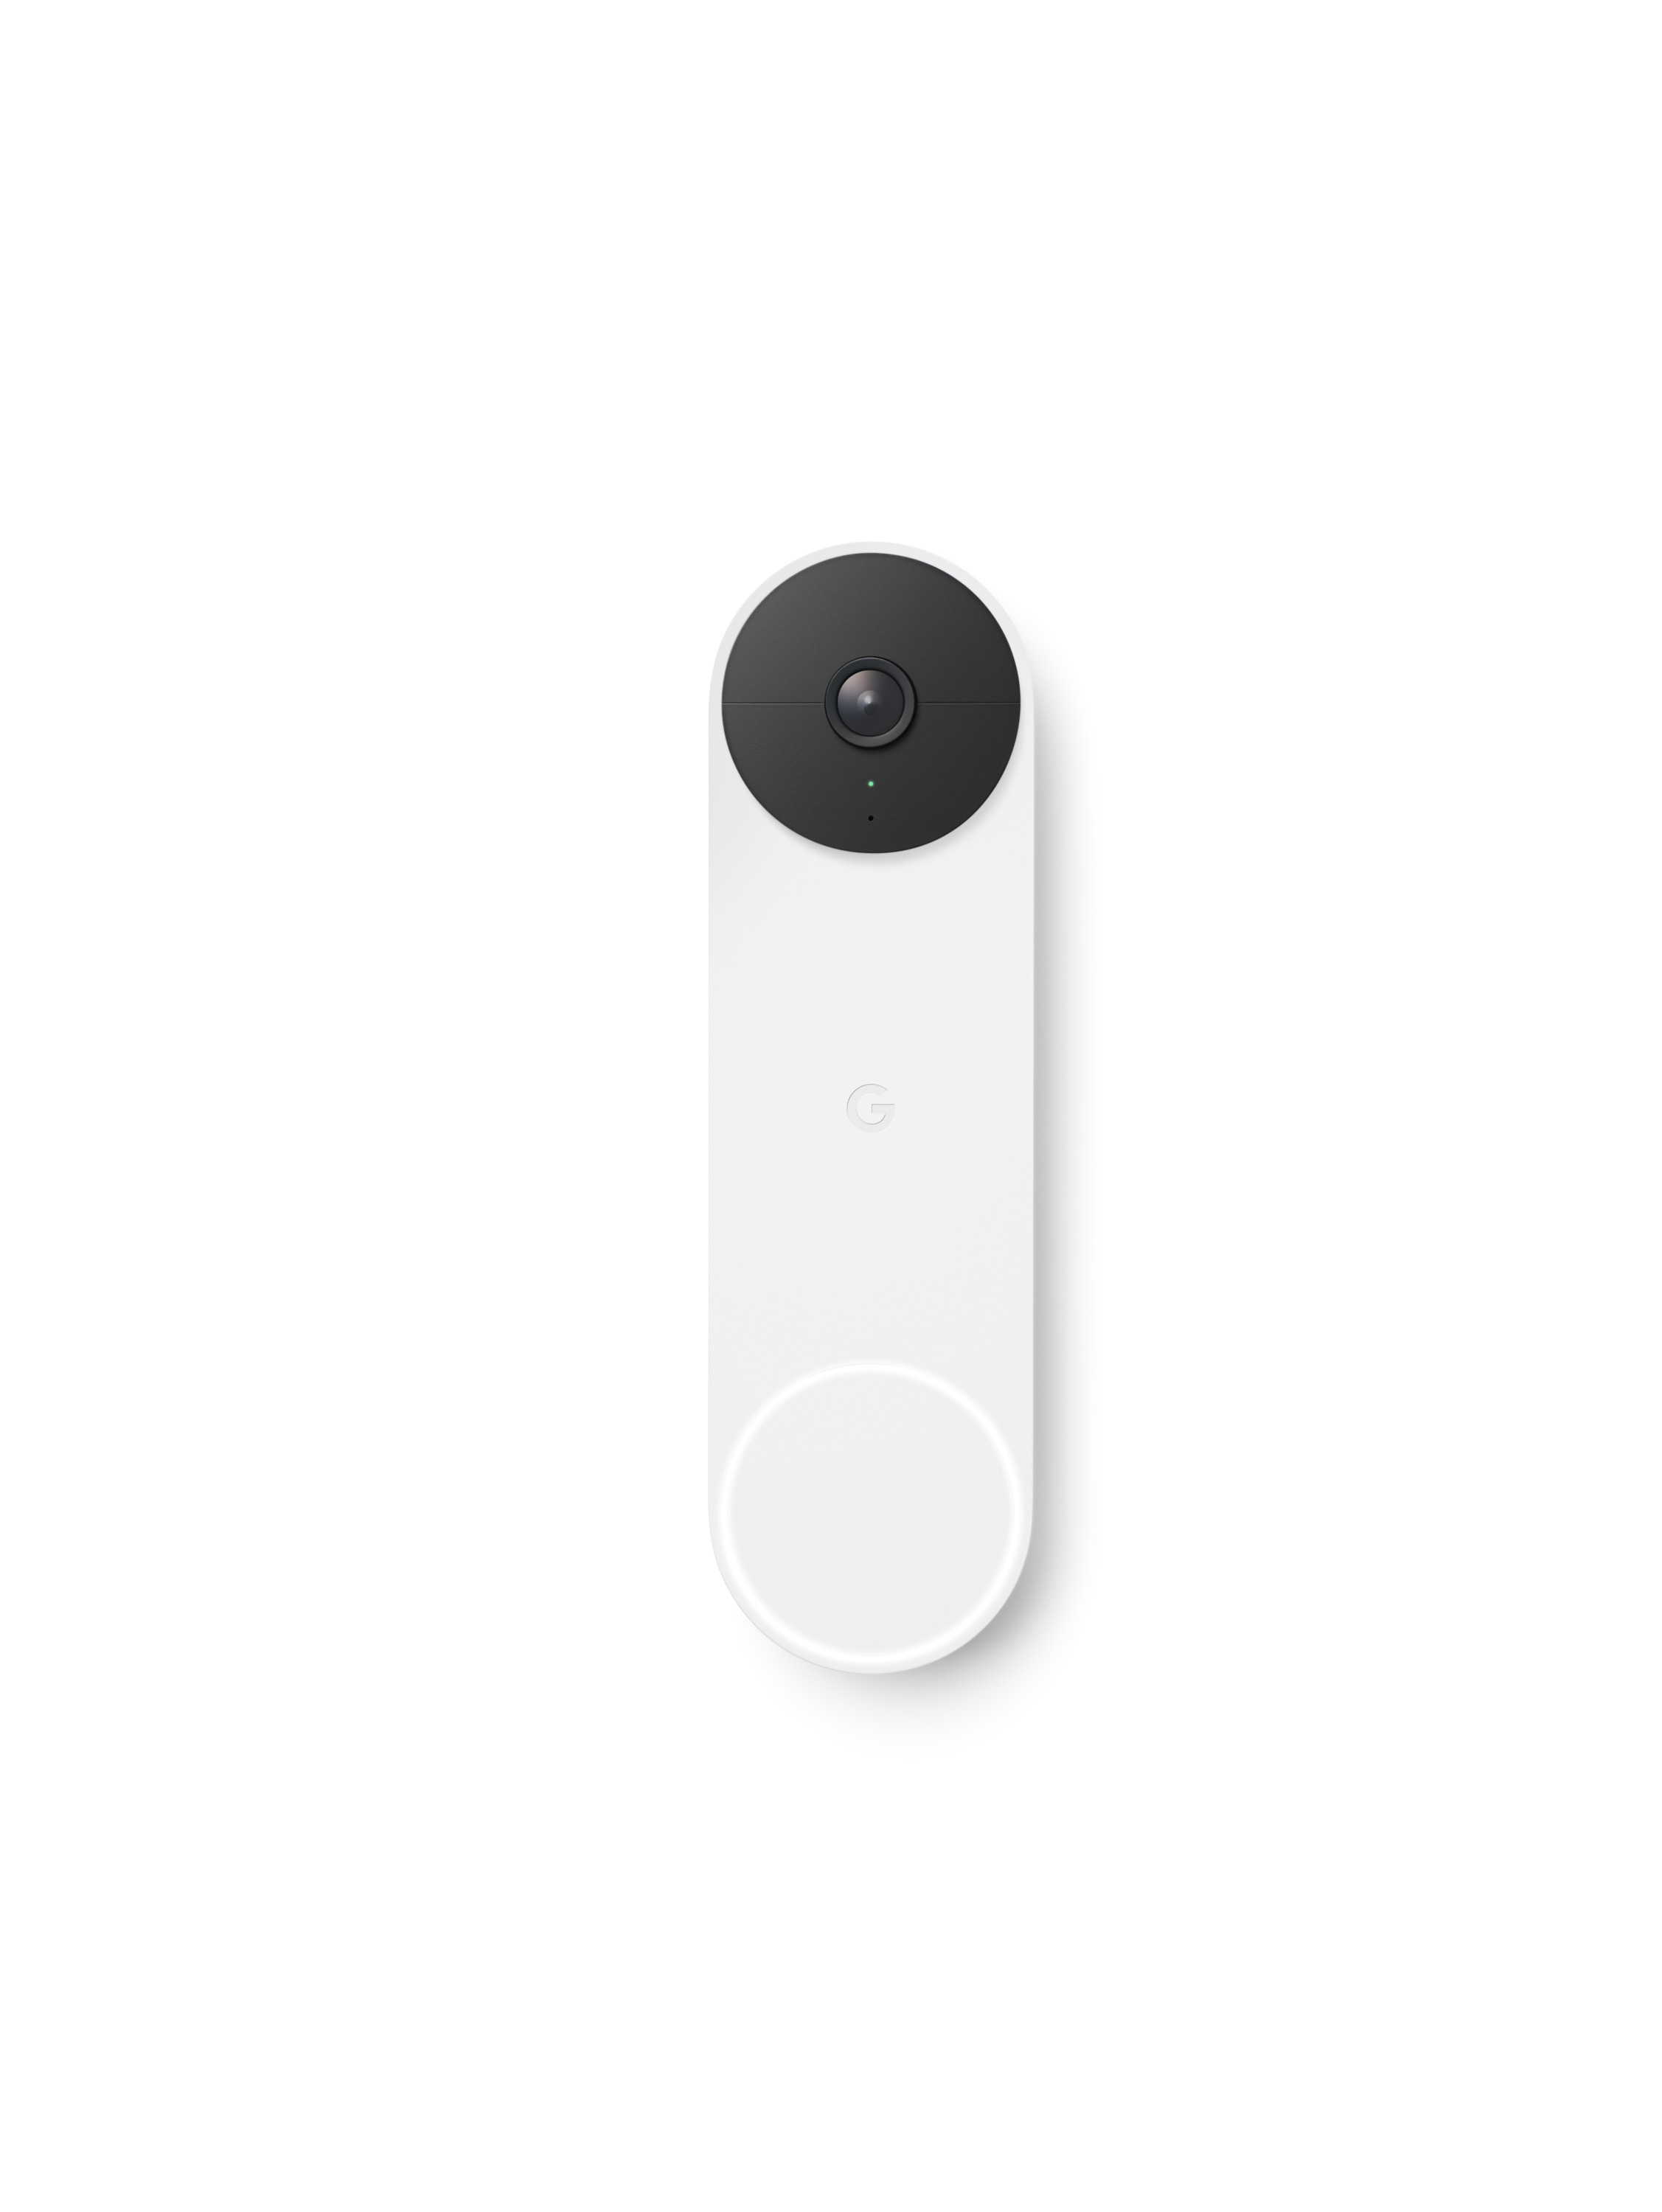 Google Nest - Türklingel - kabellos - Bluetooth, 802.11a/b/g/n